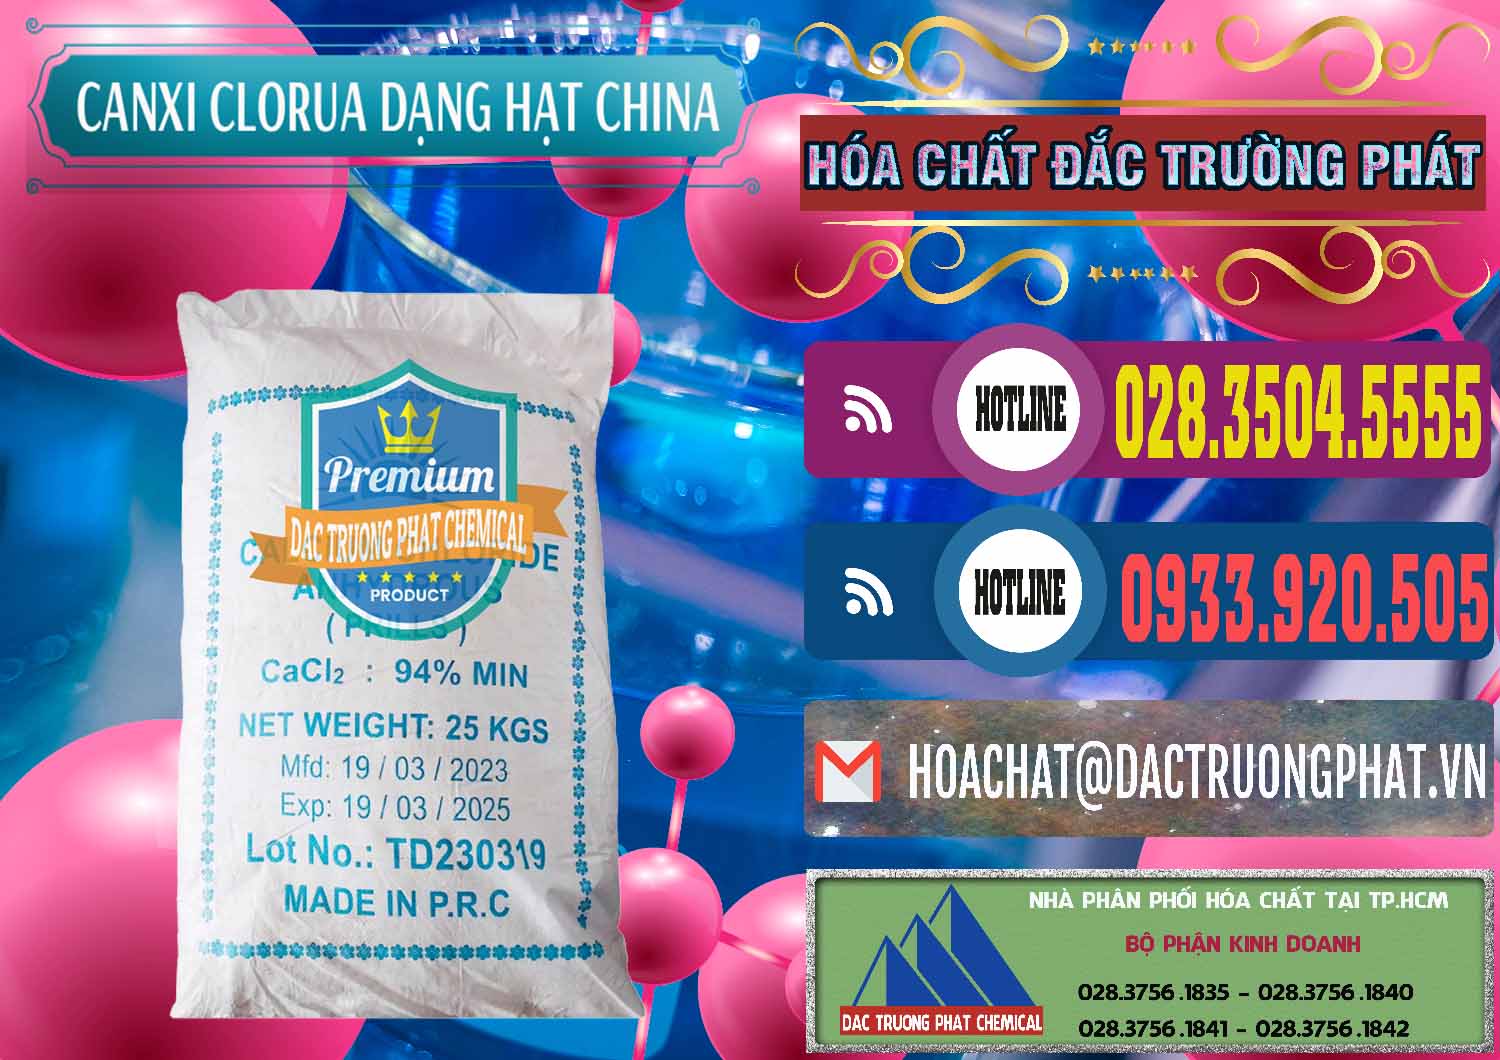 Nơi chuyên bán & cung ứng CaCl2 – Canxi Clorua 94% Dạng Hạt Trung Quốc China - 0373 - Cty cung cấp _ nhập khẩu hóa chất tại TP.HCM - muabanhoachat.com.vn